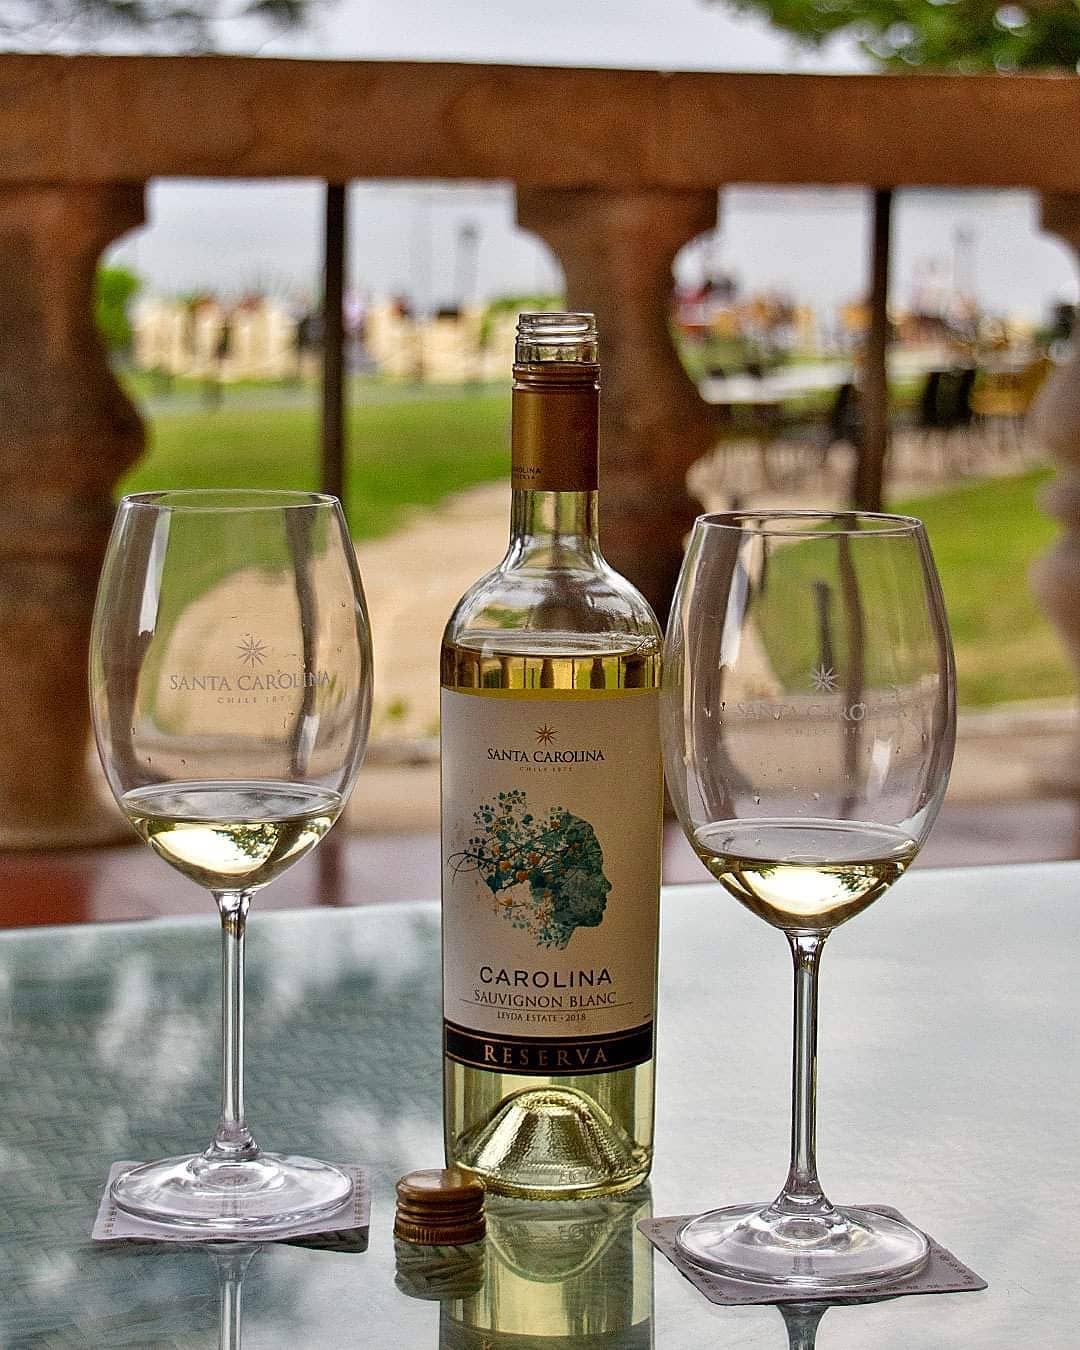 Rượu Vang Trắng Santa Carolina Reserva Sauvignon Blanc là sản phẩm nổi bật của nhà sản xuất rượu vang Santa Carolina. Họ được biết đến là một trong những nhà máy